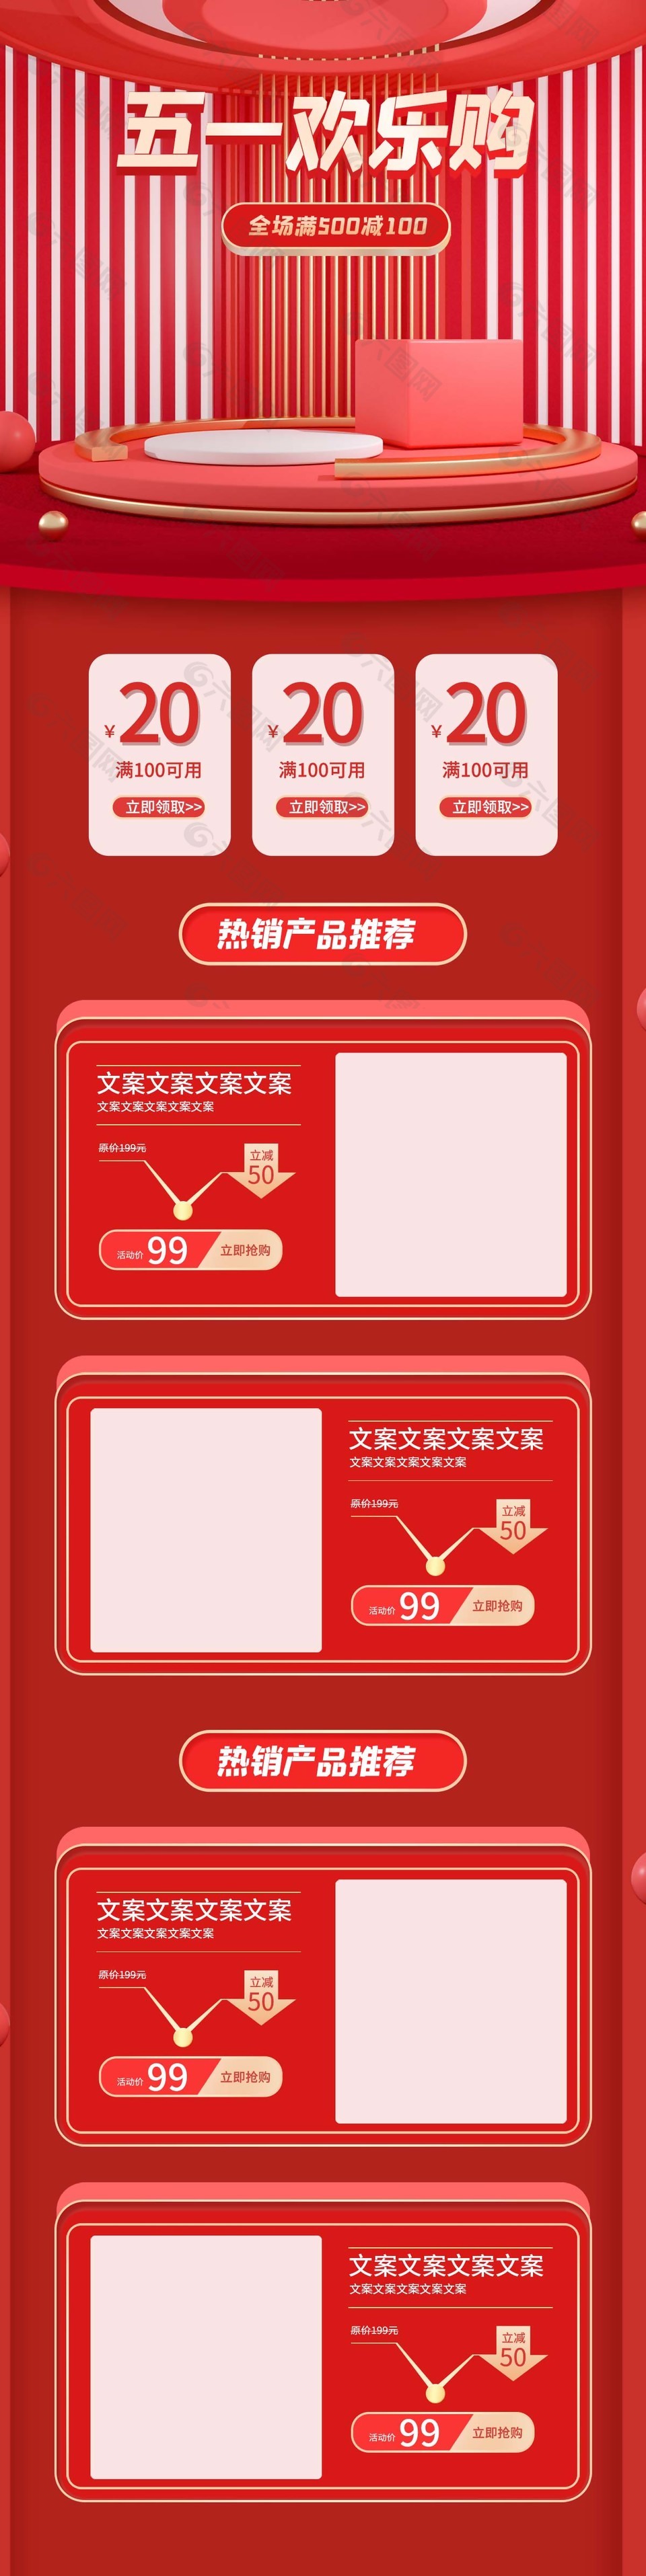 五一欢乐购热销产品推荐电商红色模板设计